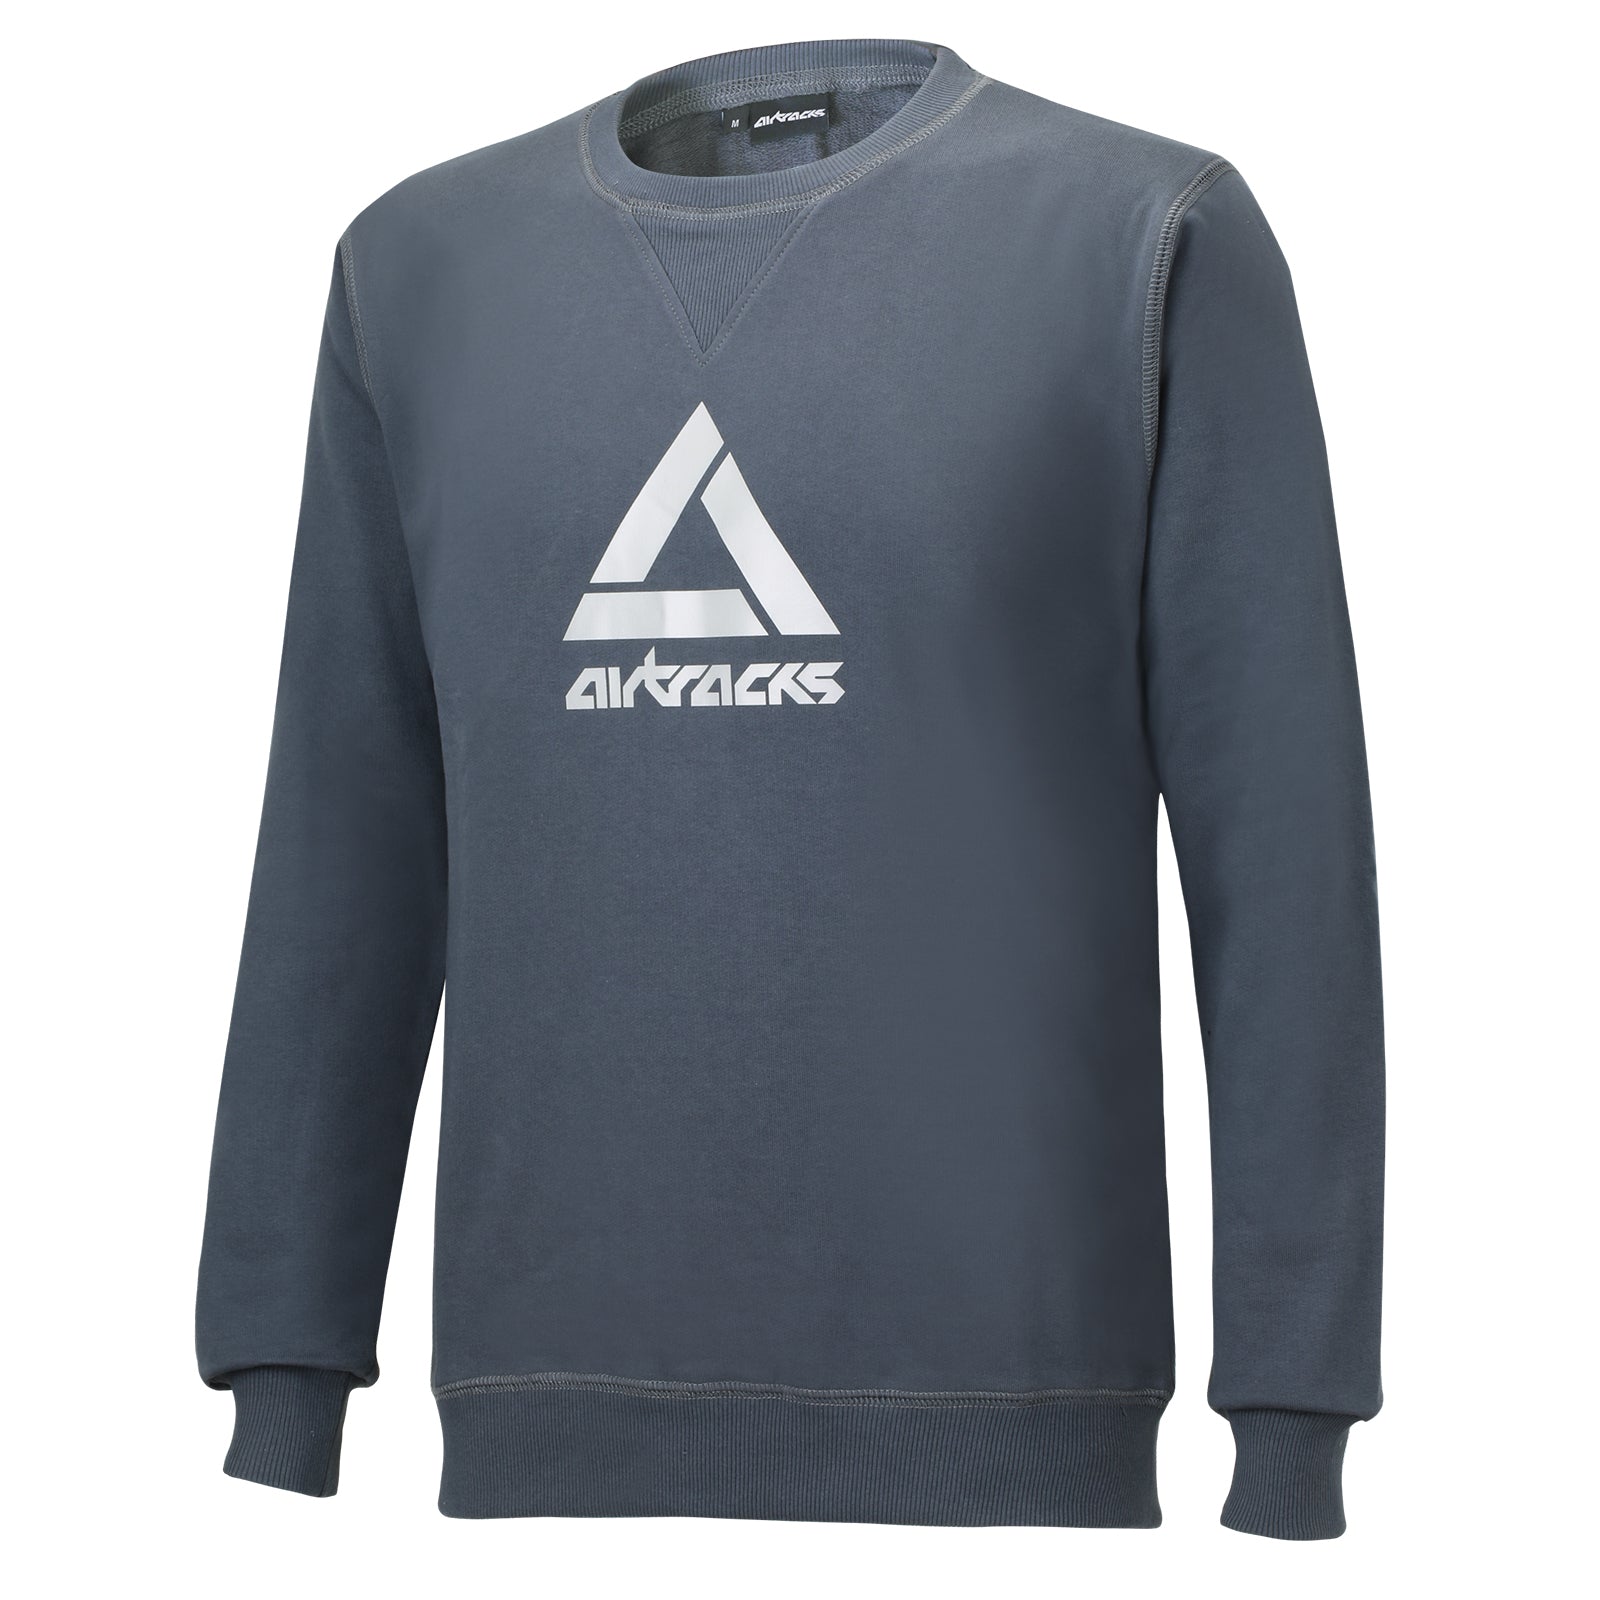 Sweatshirt-ohne-kapuze-winter-thermo-pro-hoodie-sweater-s-m-l-xl-xxl-grau-schwarz-logo-print